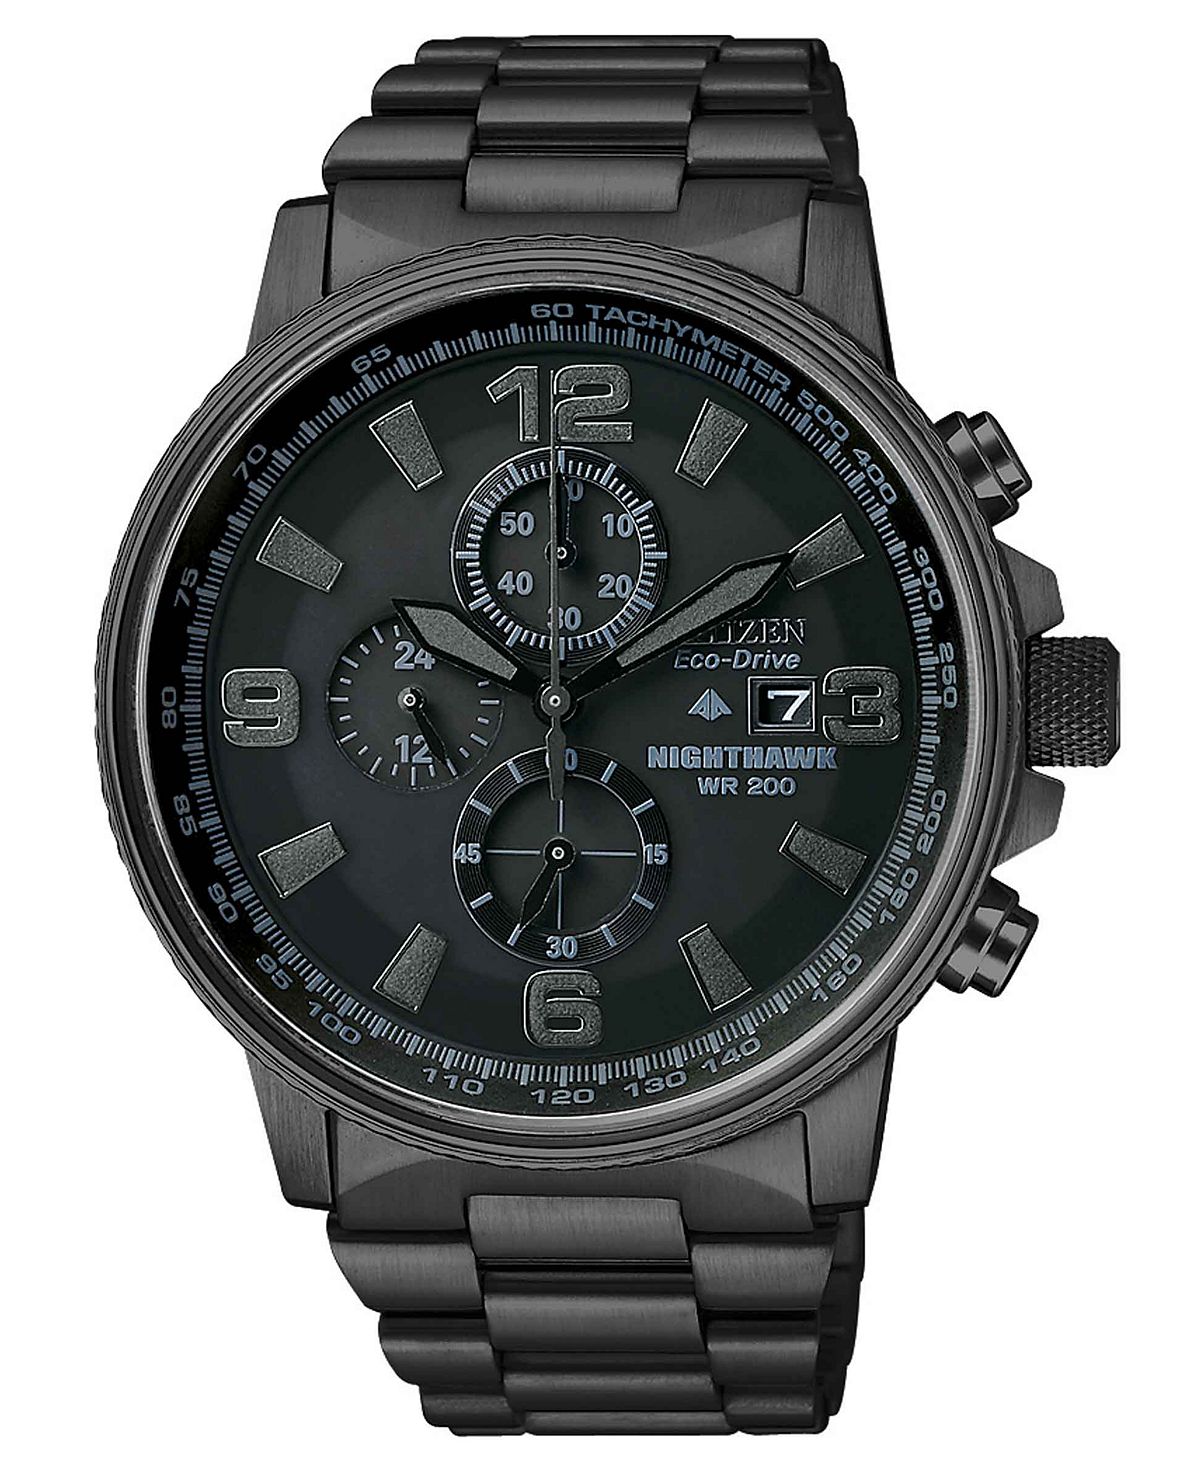 Мужские часы с хронографом Eco-Drive Nighthawk, черные часы-браслет из нержавеющей стали с ионным покрытием, 43 мм CA0295-58E Citizen часы citizen ca0295 58e